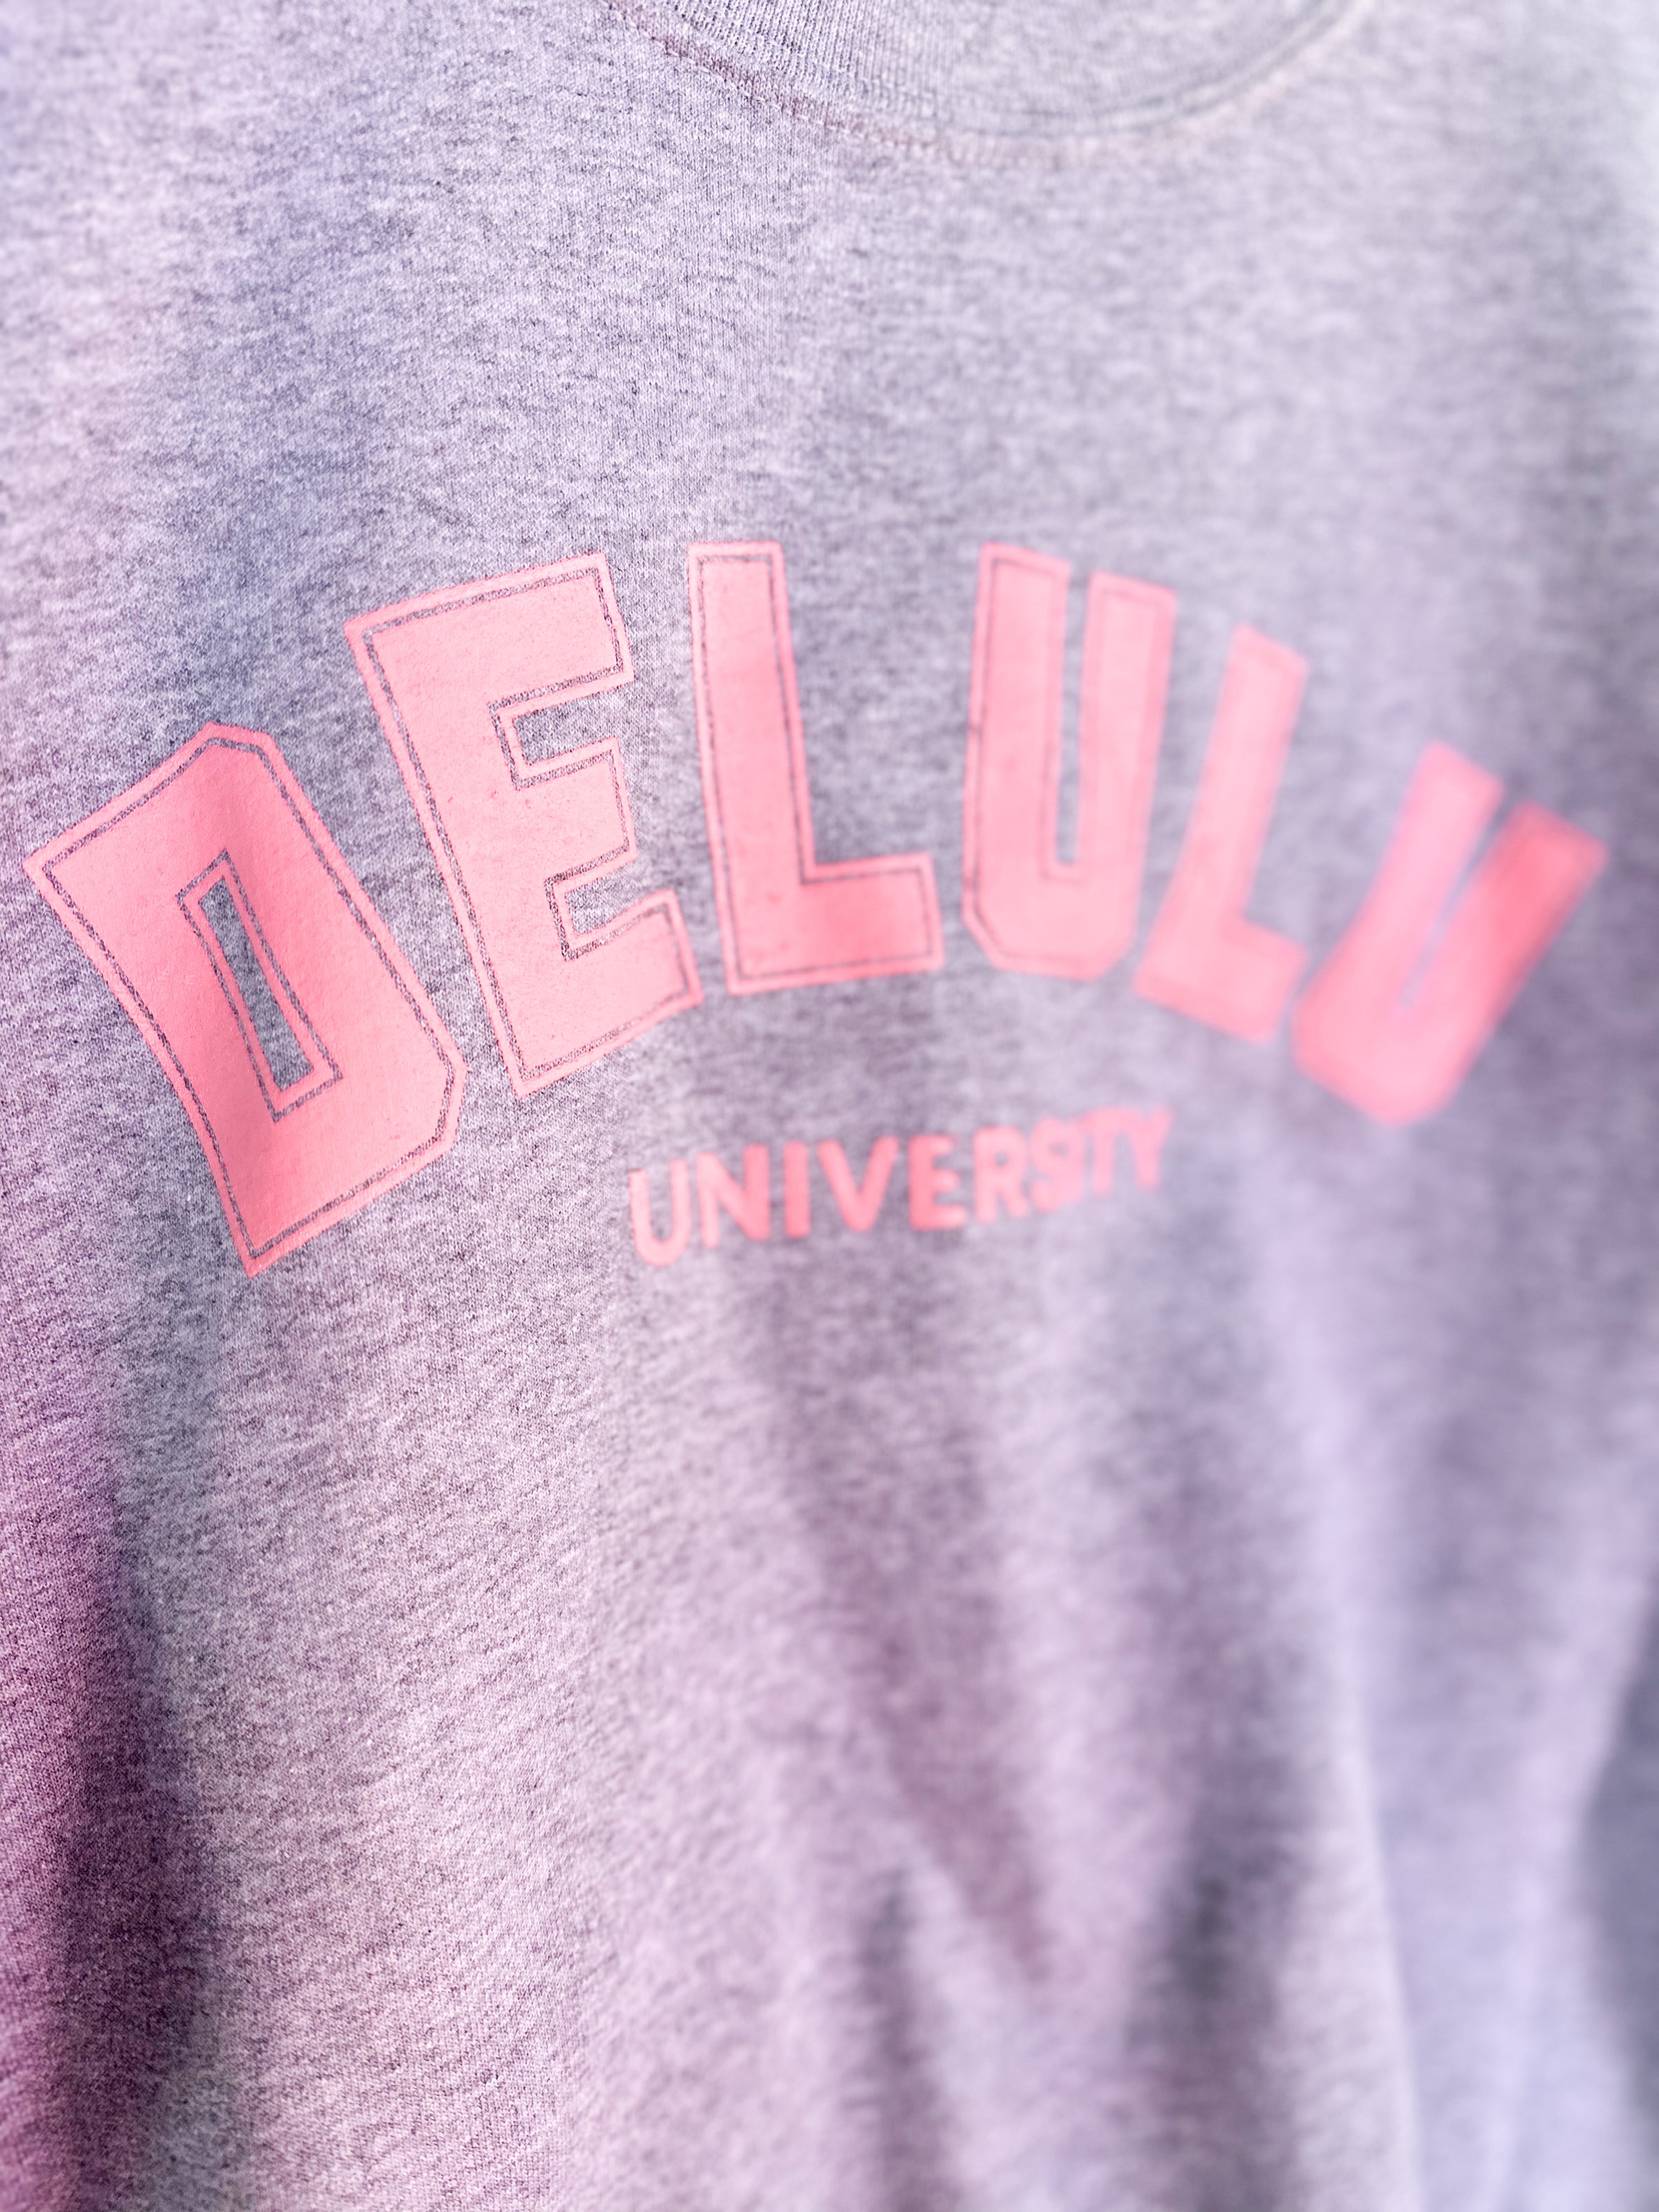 Delulu University